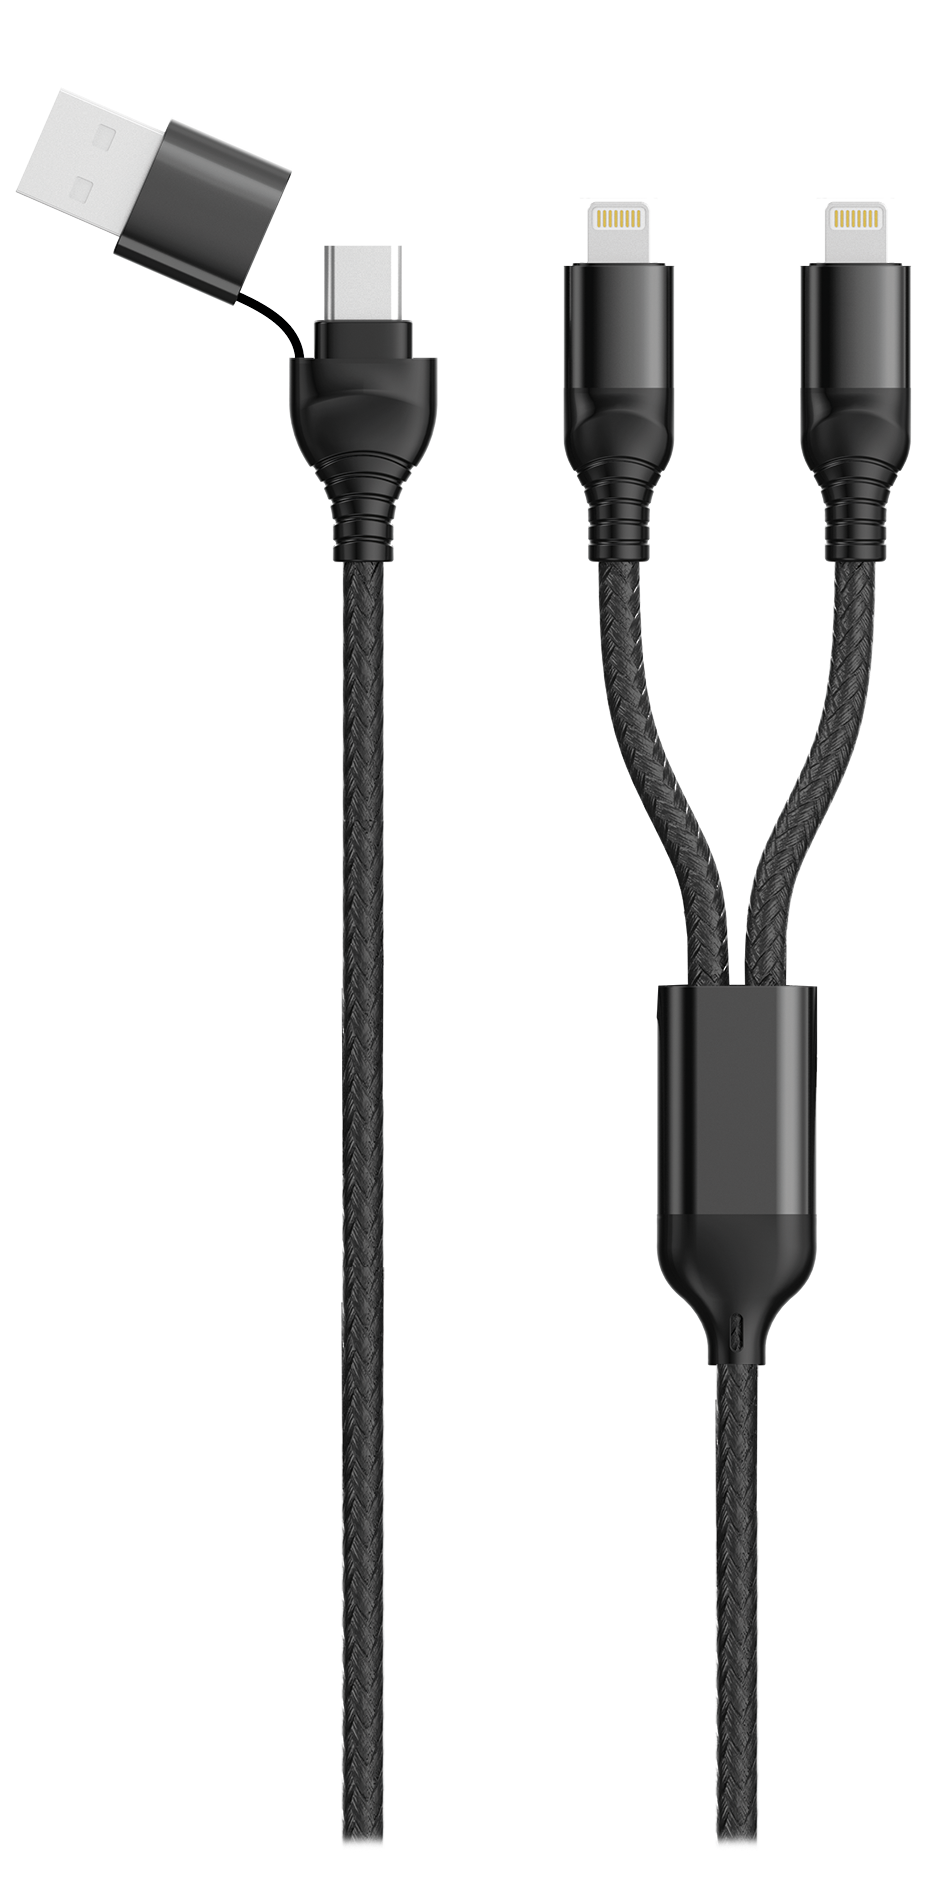 Bild von Duo USB / Type C Ladekabel Lightning - schwarz - 120cm